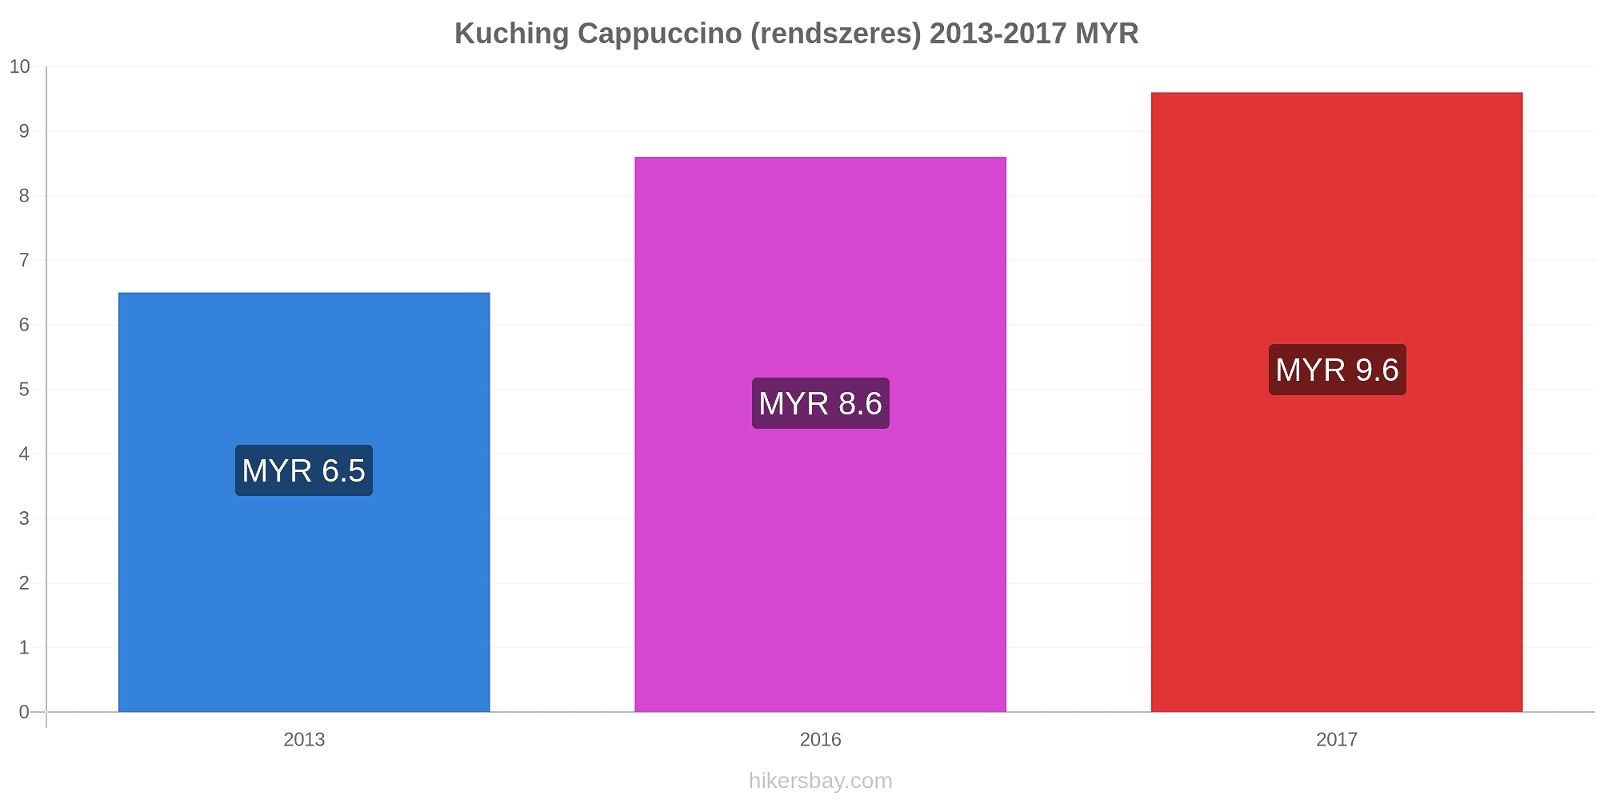 Kuching árváltozások Cappuccino (rendszeres) hikersbay.com